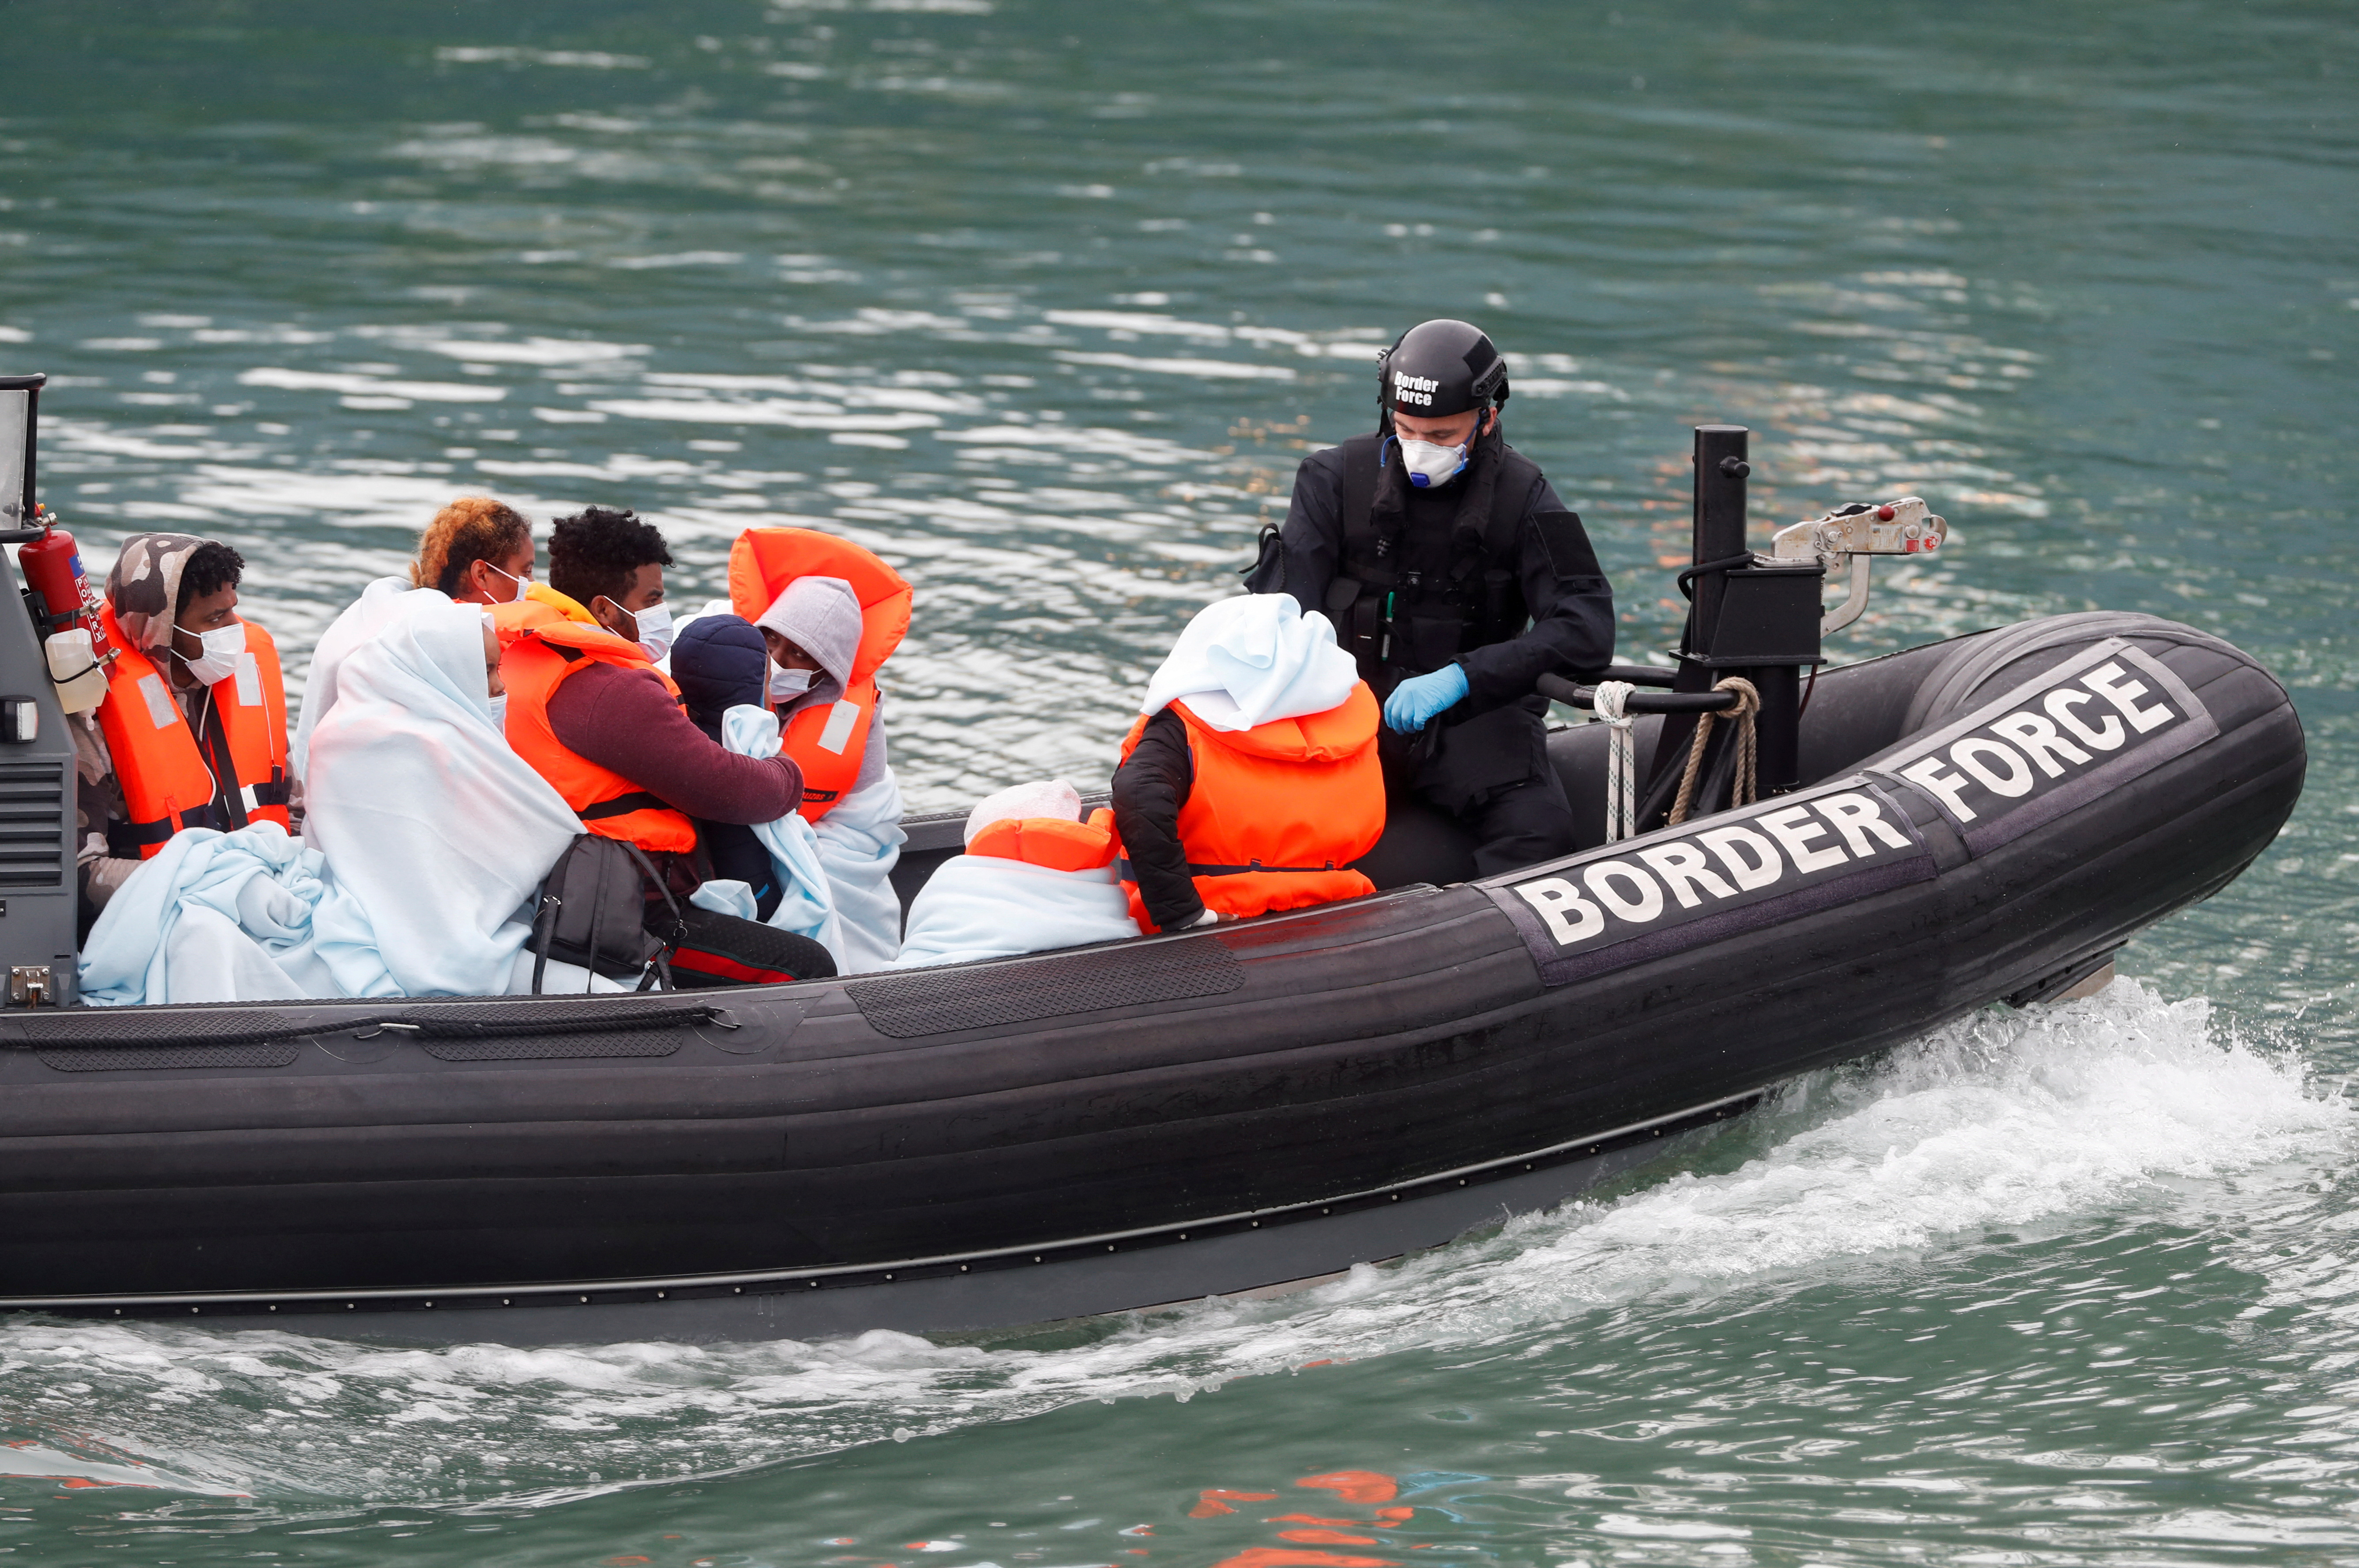 Patrulla fronteriza junto a migrantes en el puerto de Dover (Reuters/archivo)